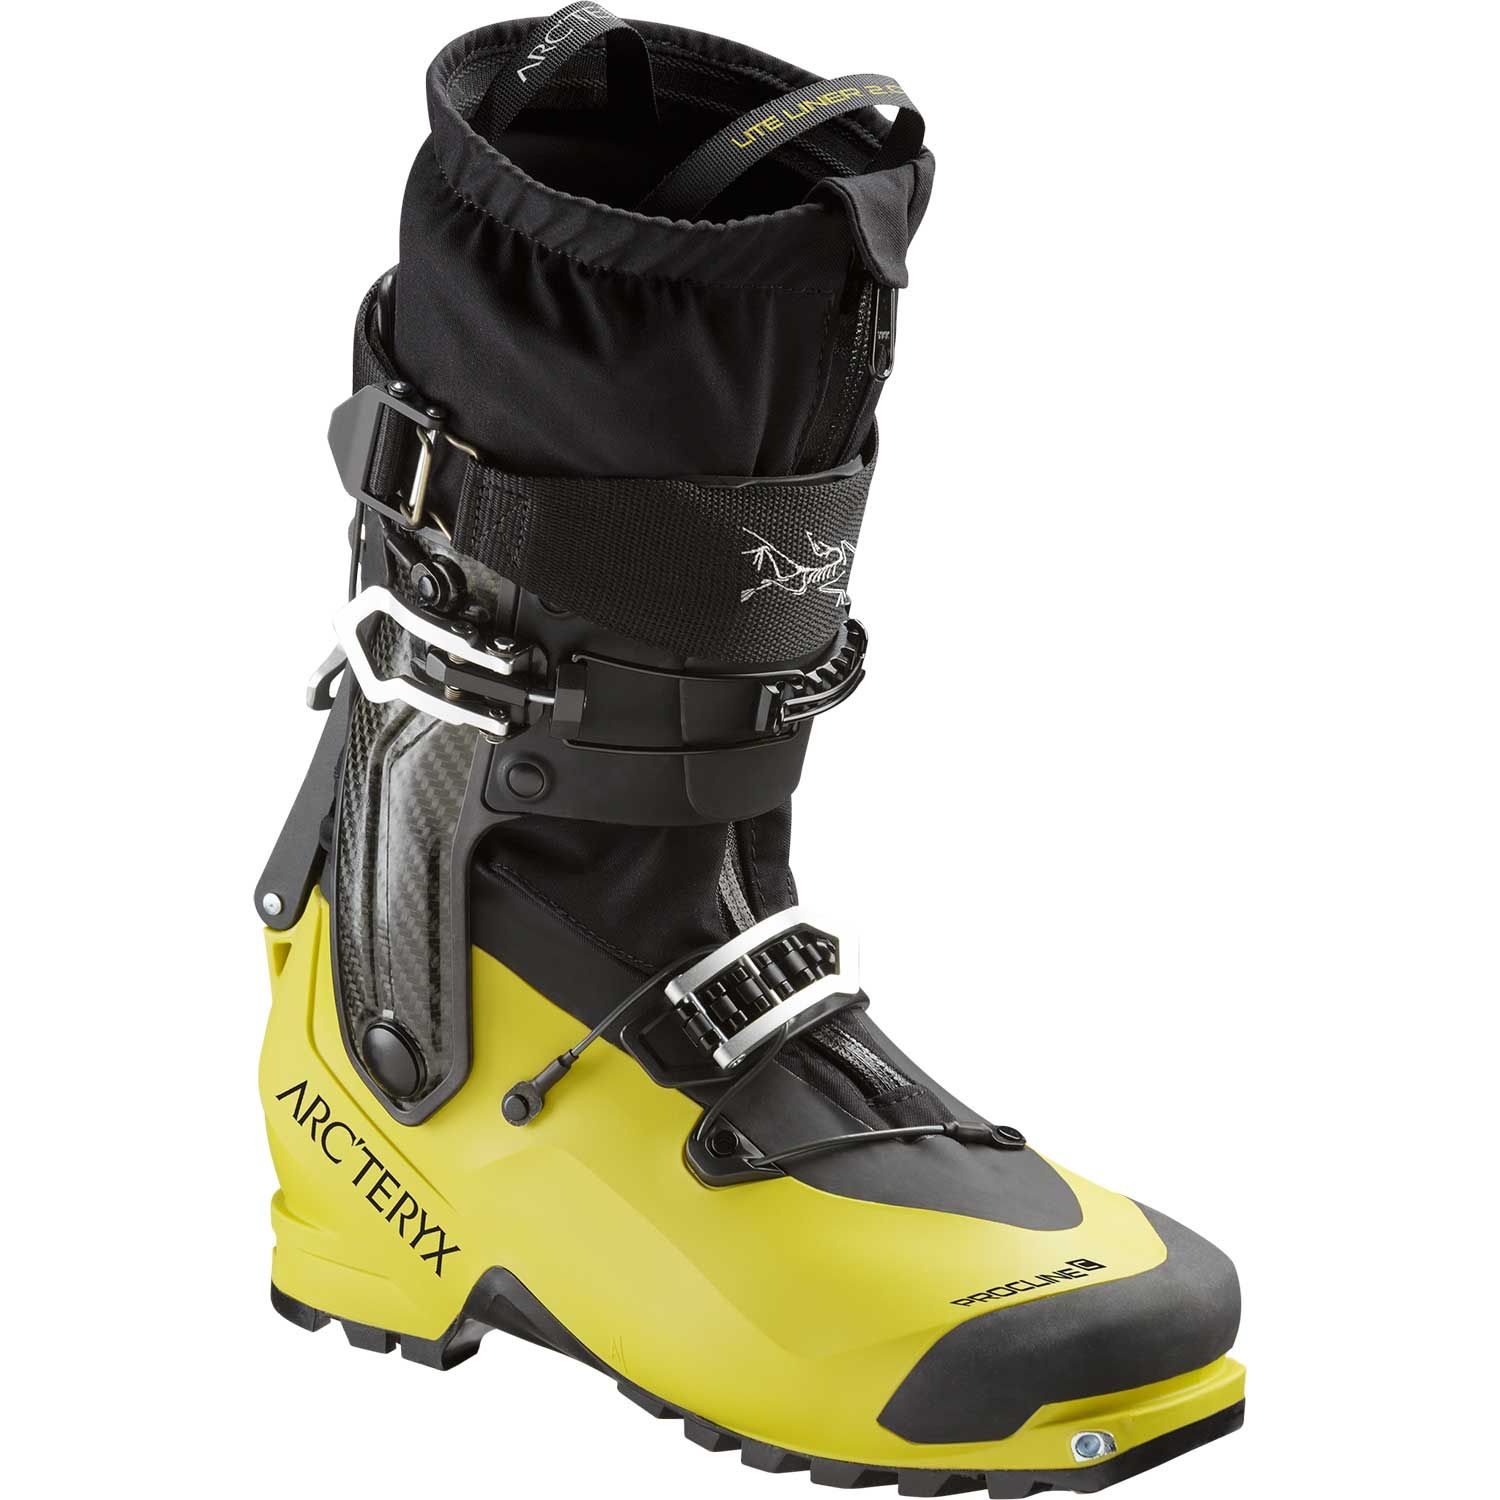 Chaussures ski d'alpinisme Procline Carbon - Noir/jaune